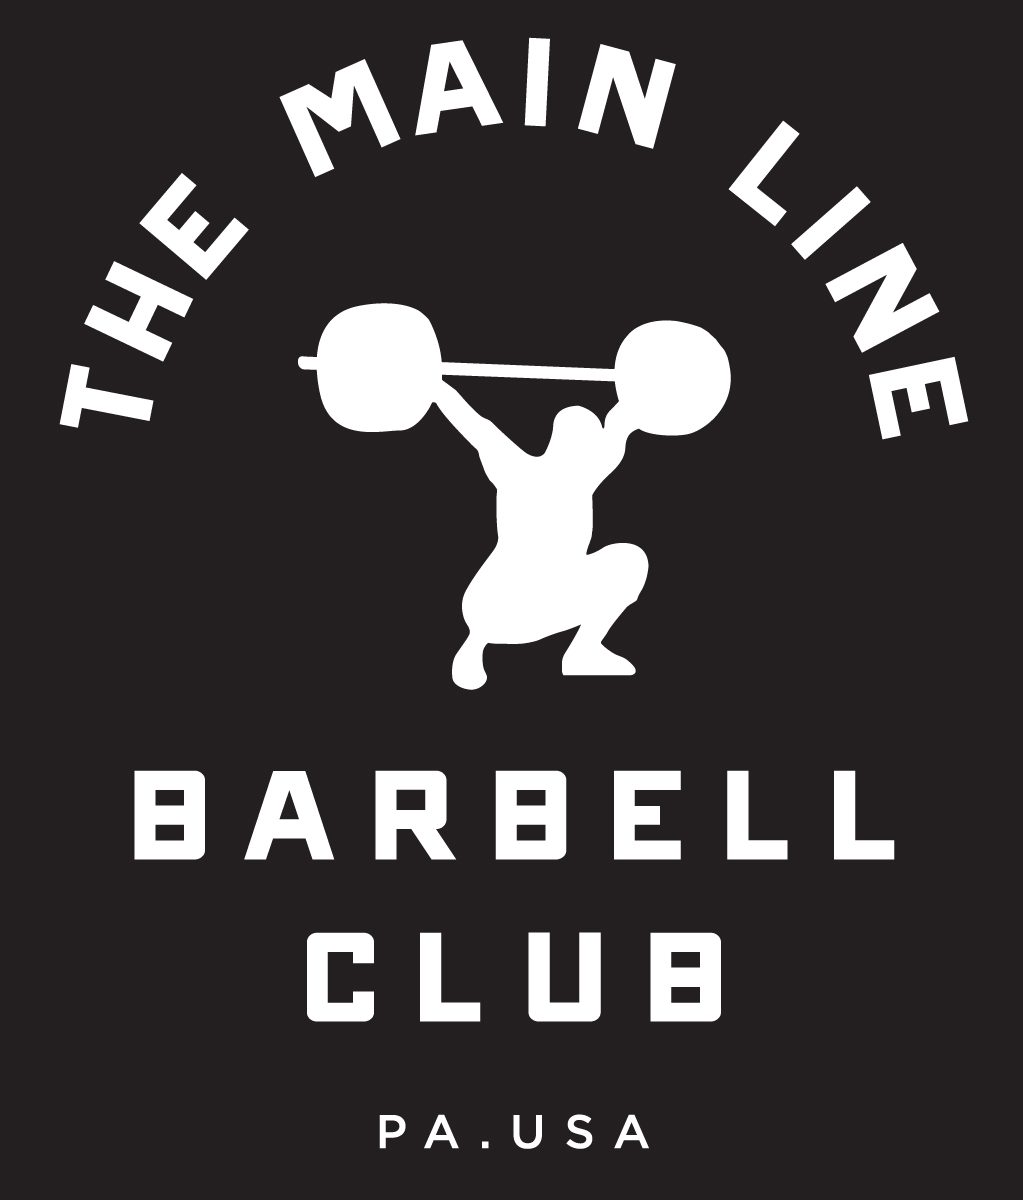 Week of 9.5.16 Barbell Club